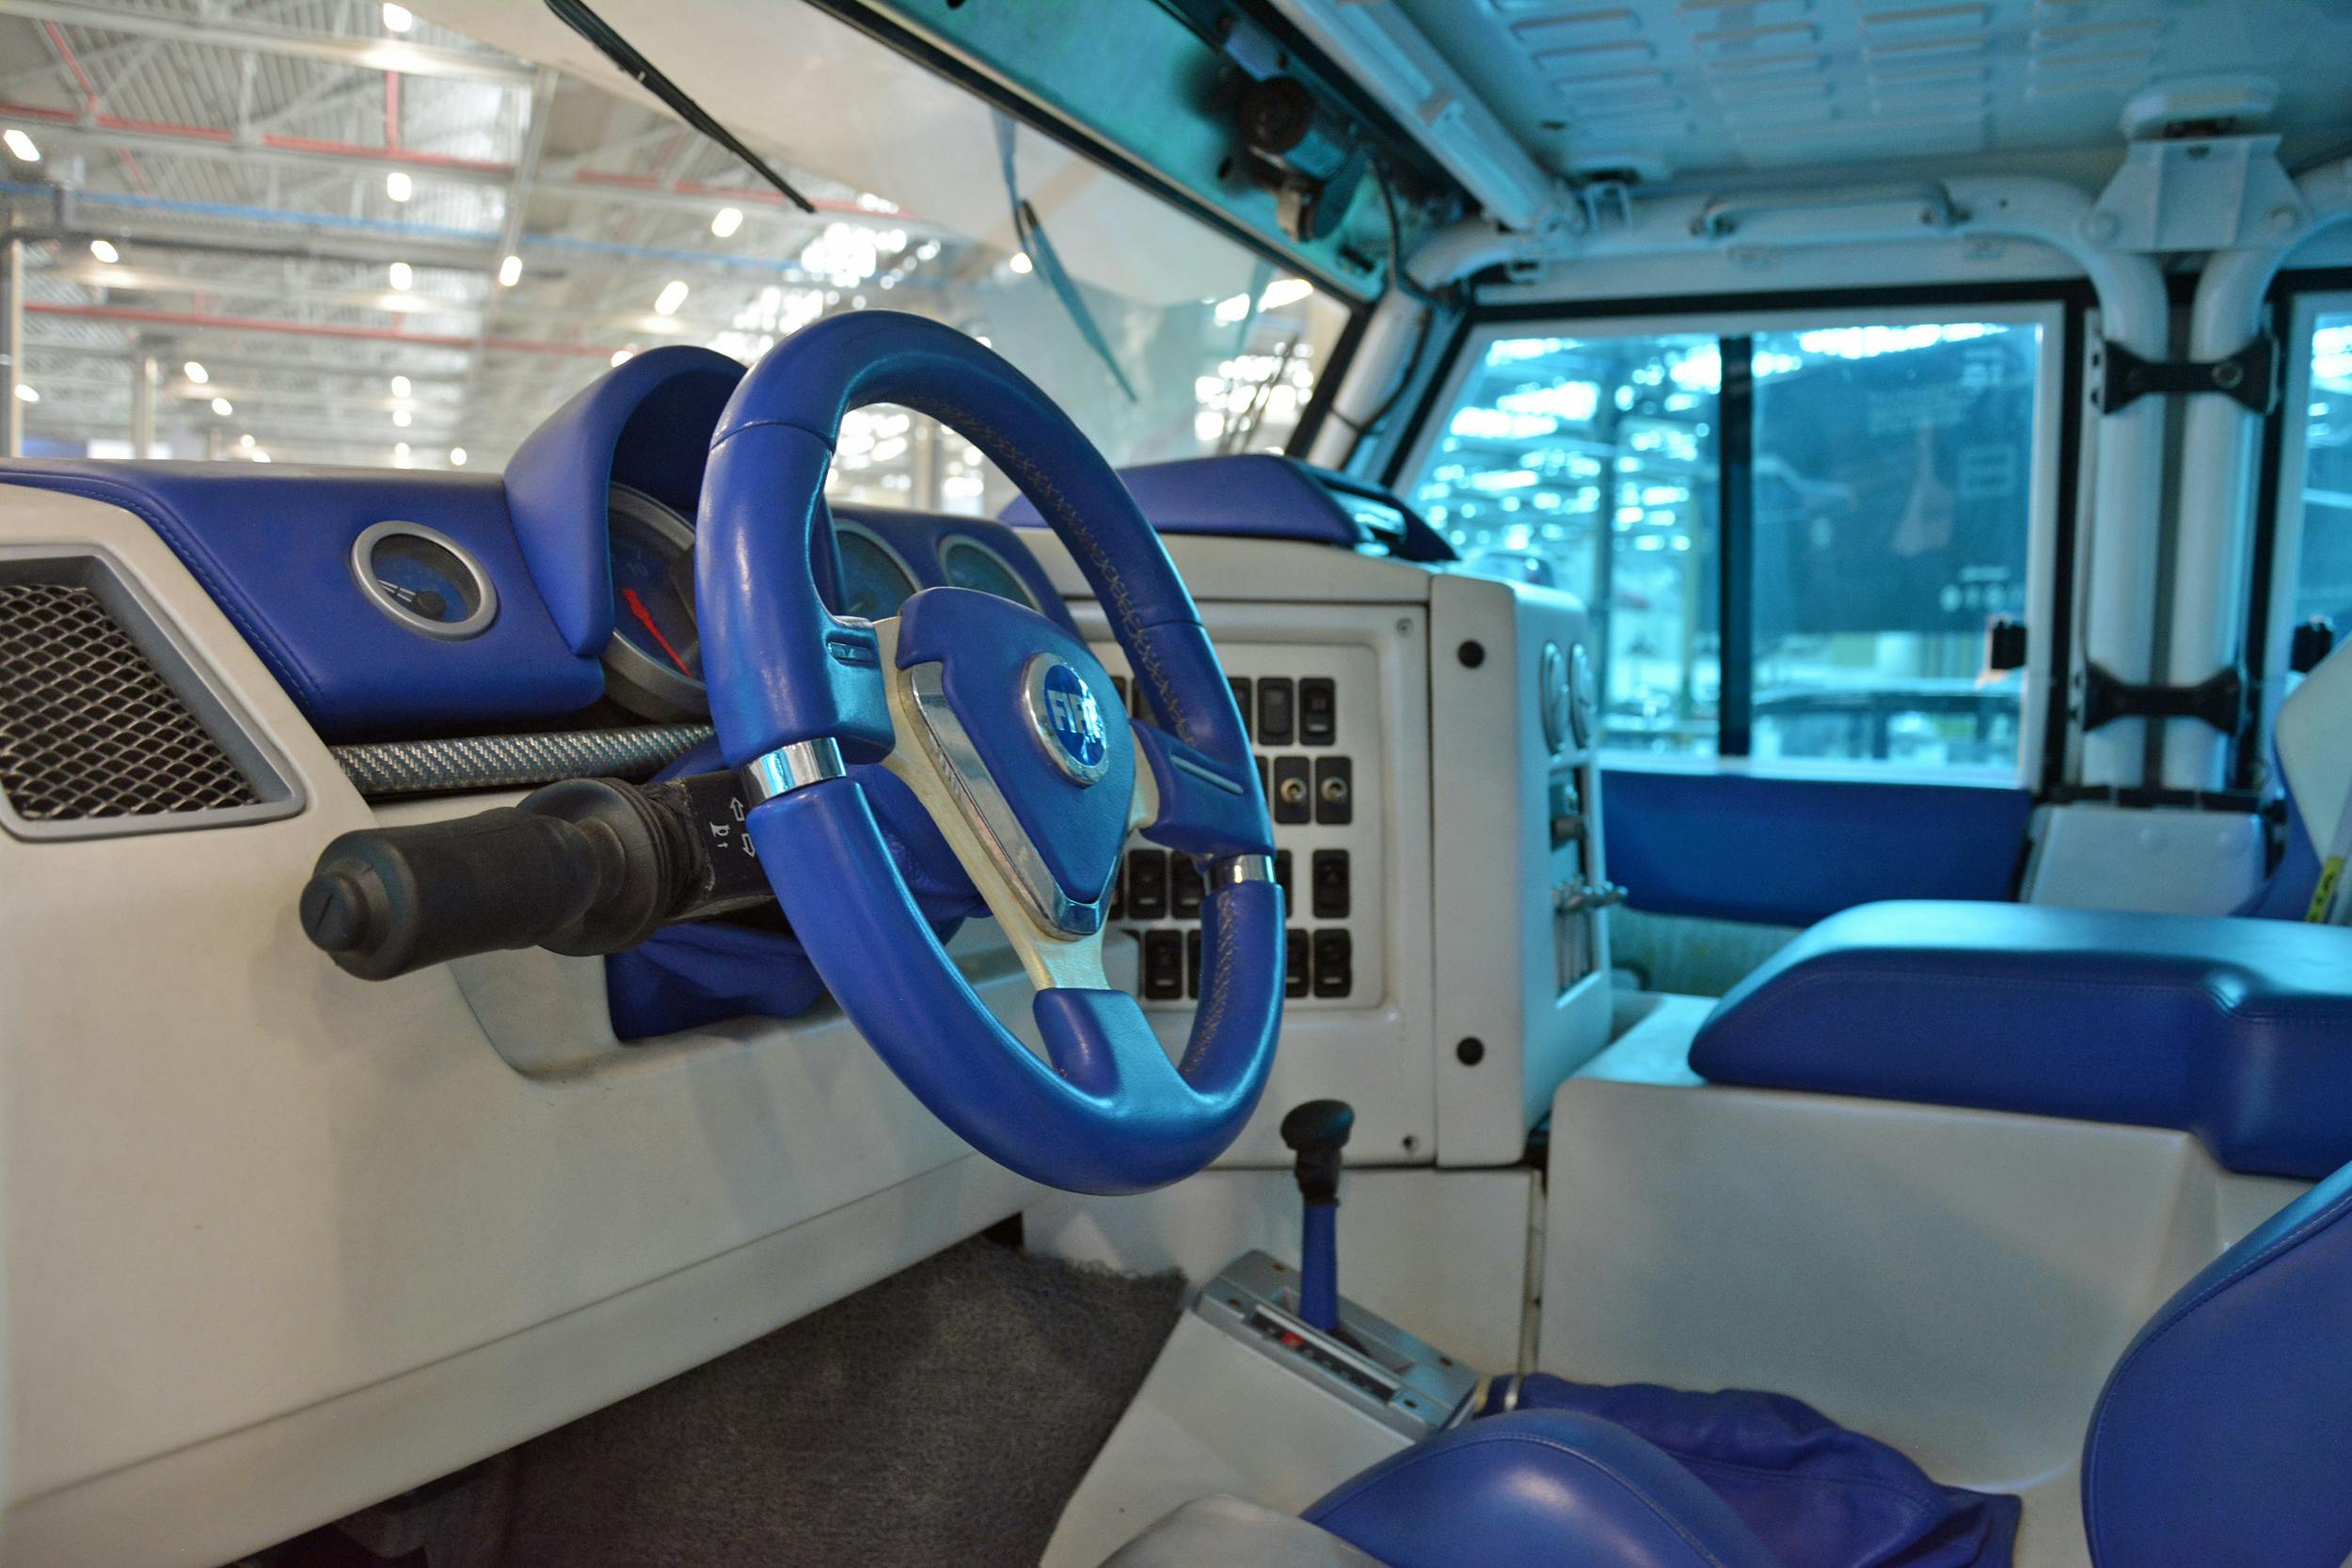 2005 fiat oltre interior steering wheel